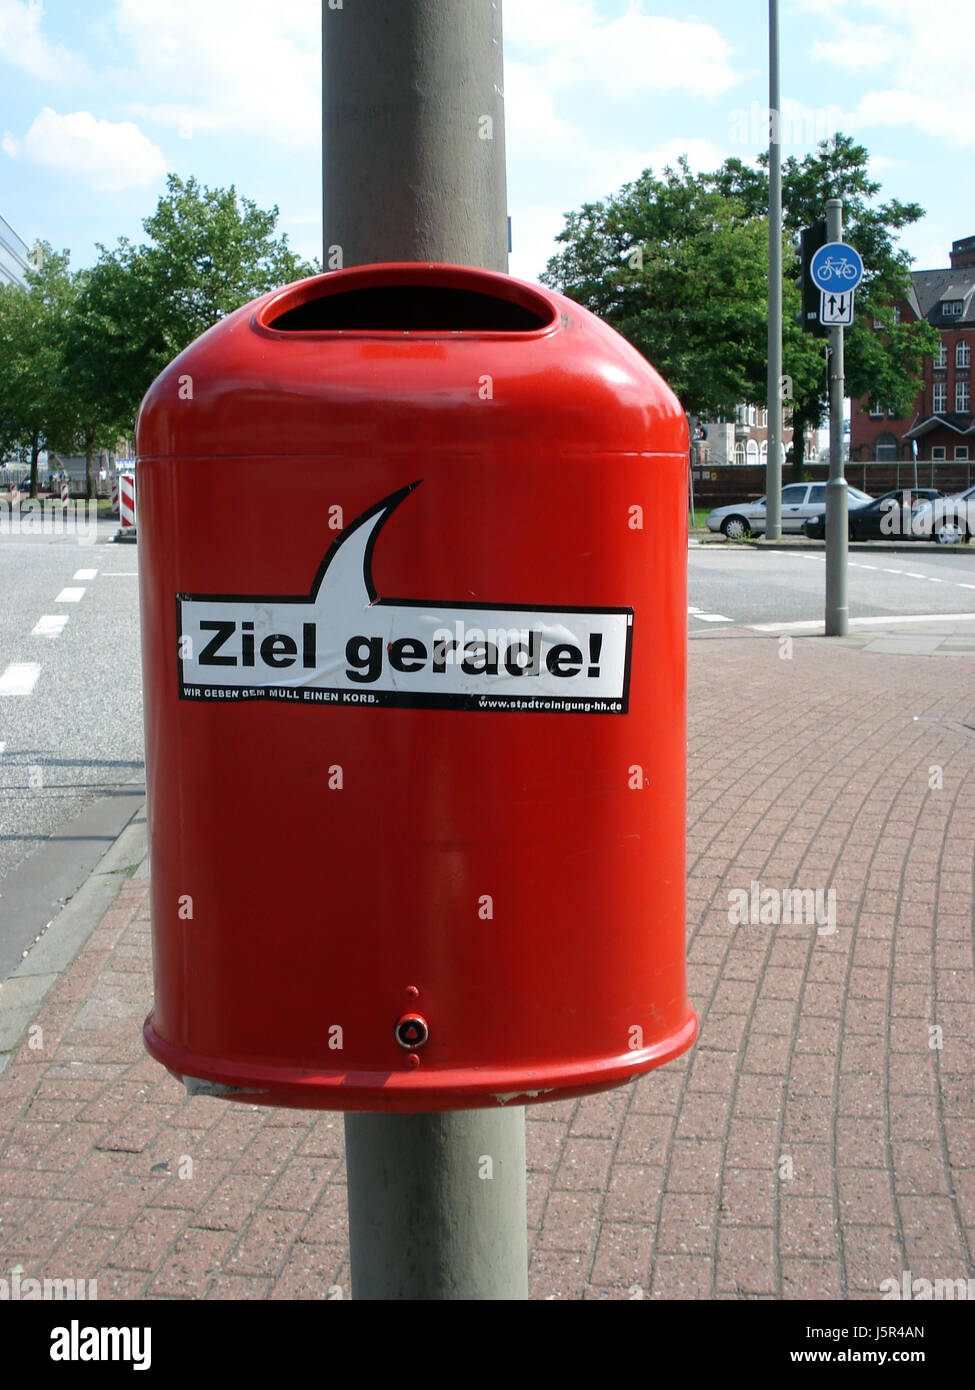 Hamburg Papierkorb Mülleimer zur Verfügung Trennung Mull Müll Papierkorb  Stockfotografie - Alamy